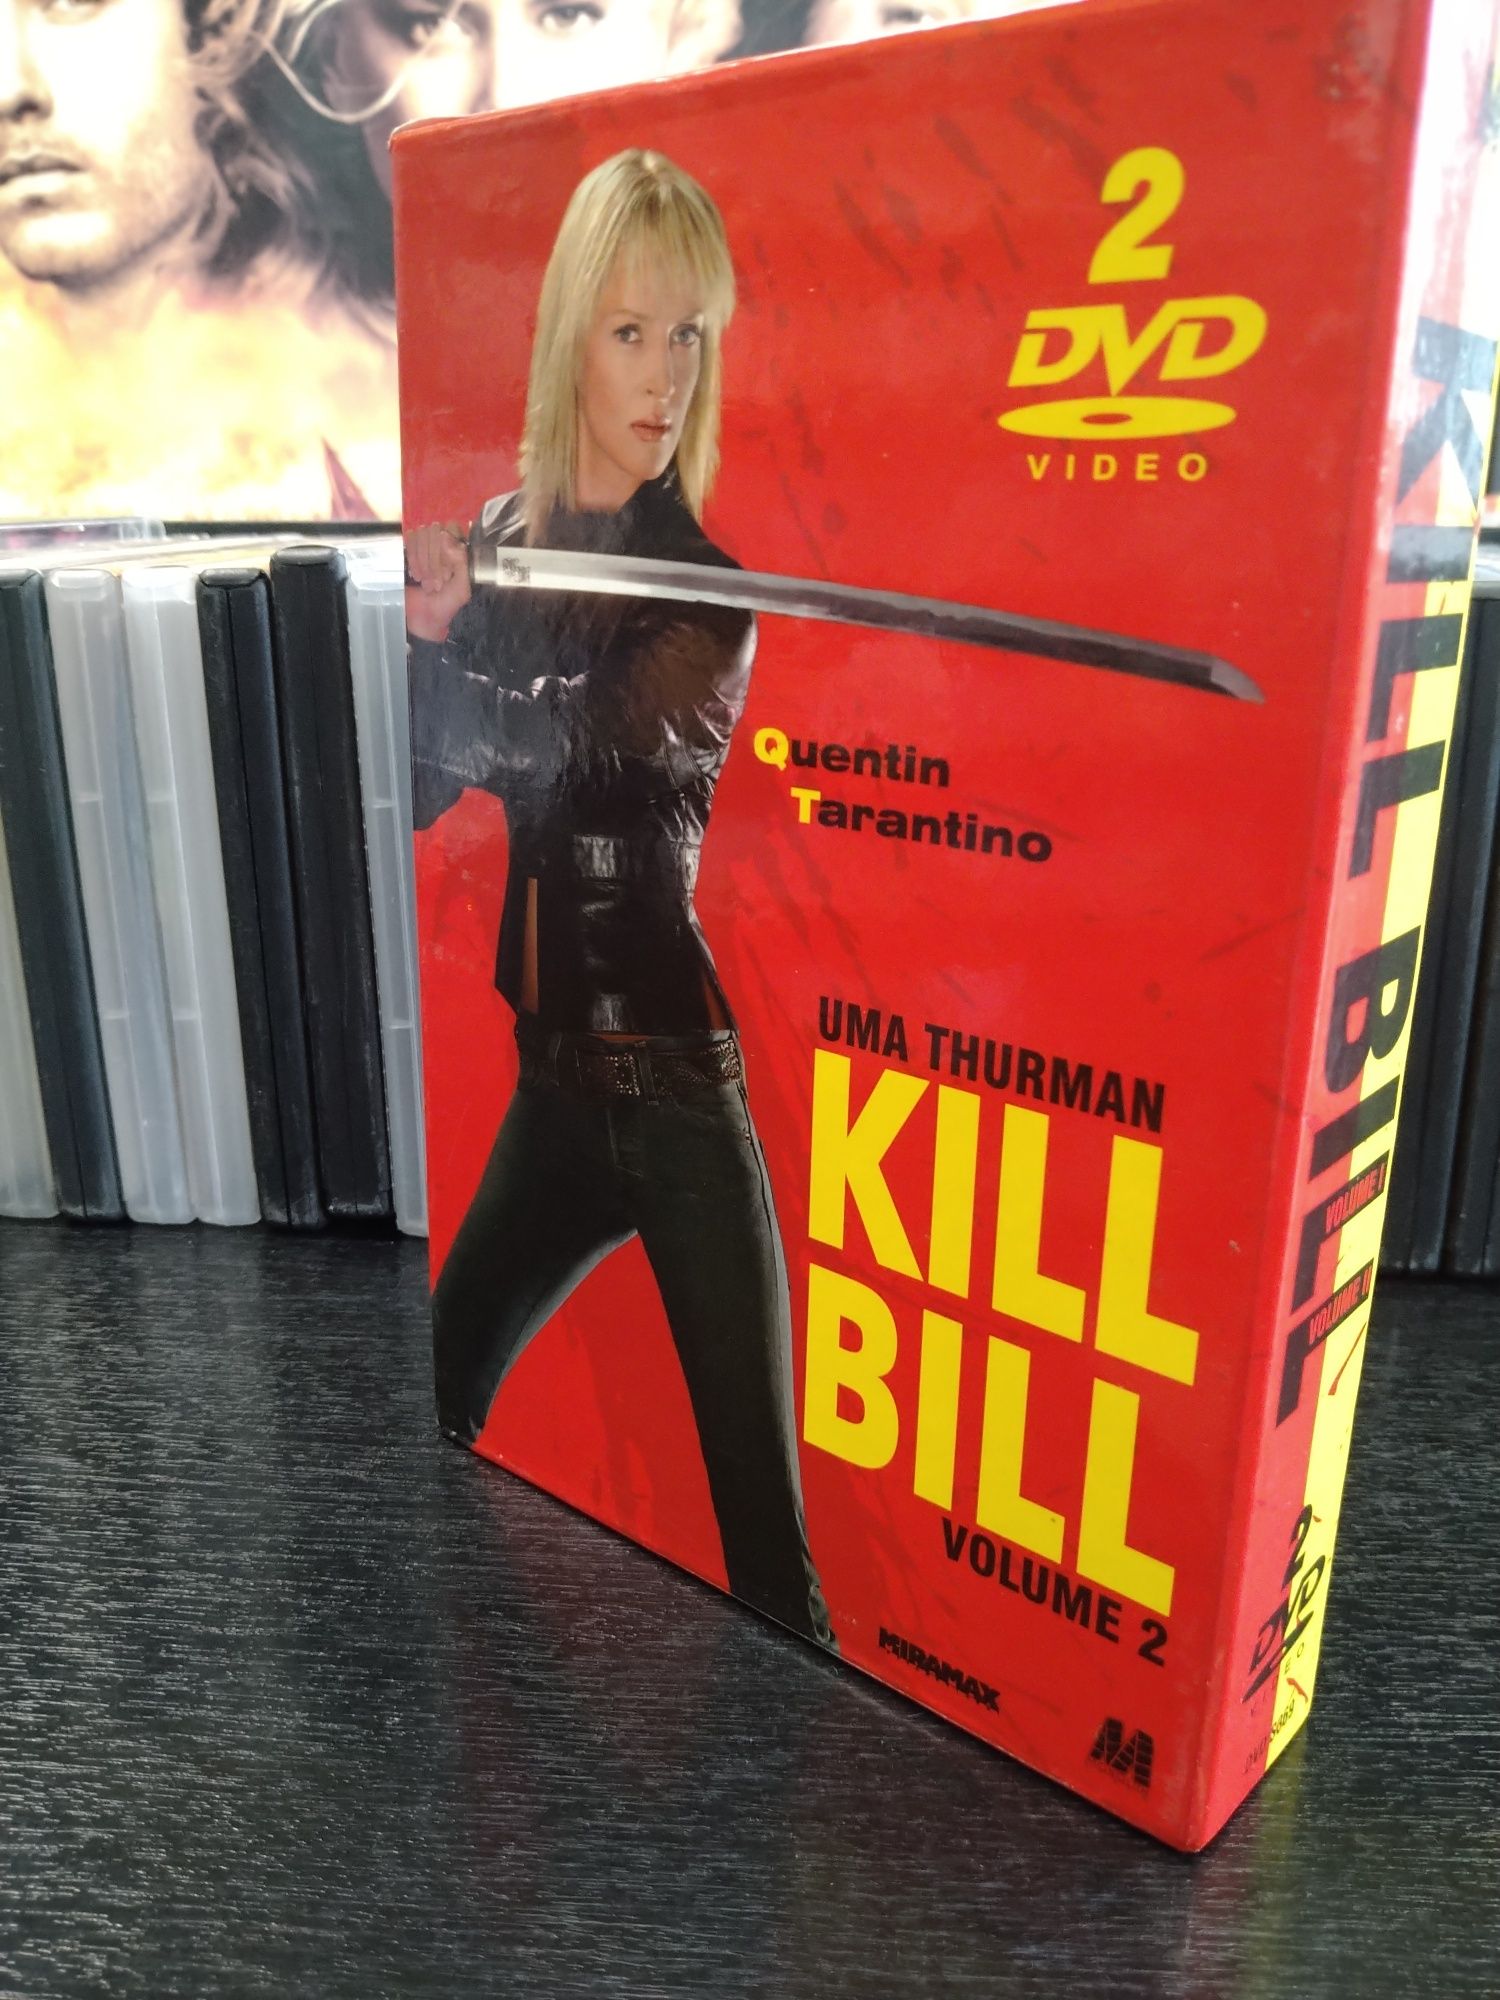 Kolekcjonerskie wydanie dwupłytowe filmów Kill Bill 1+2